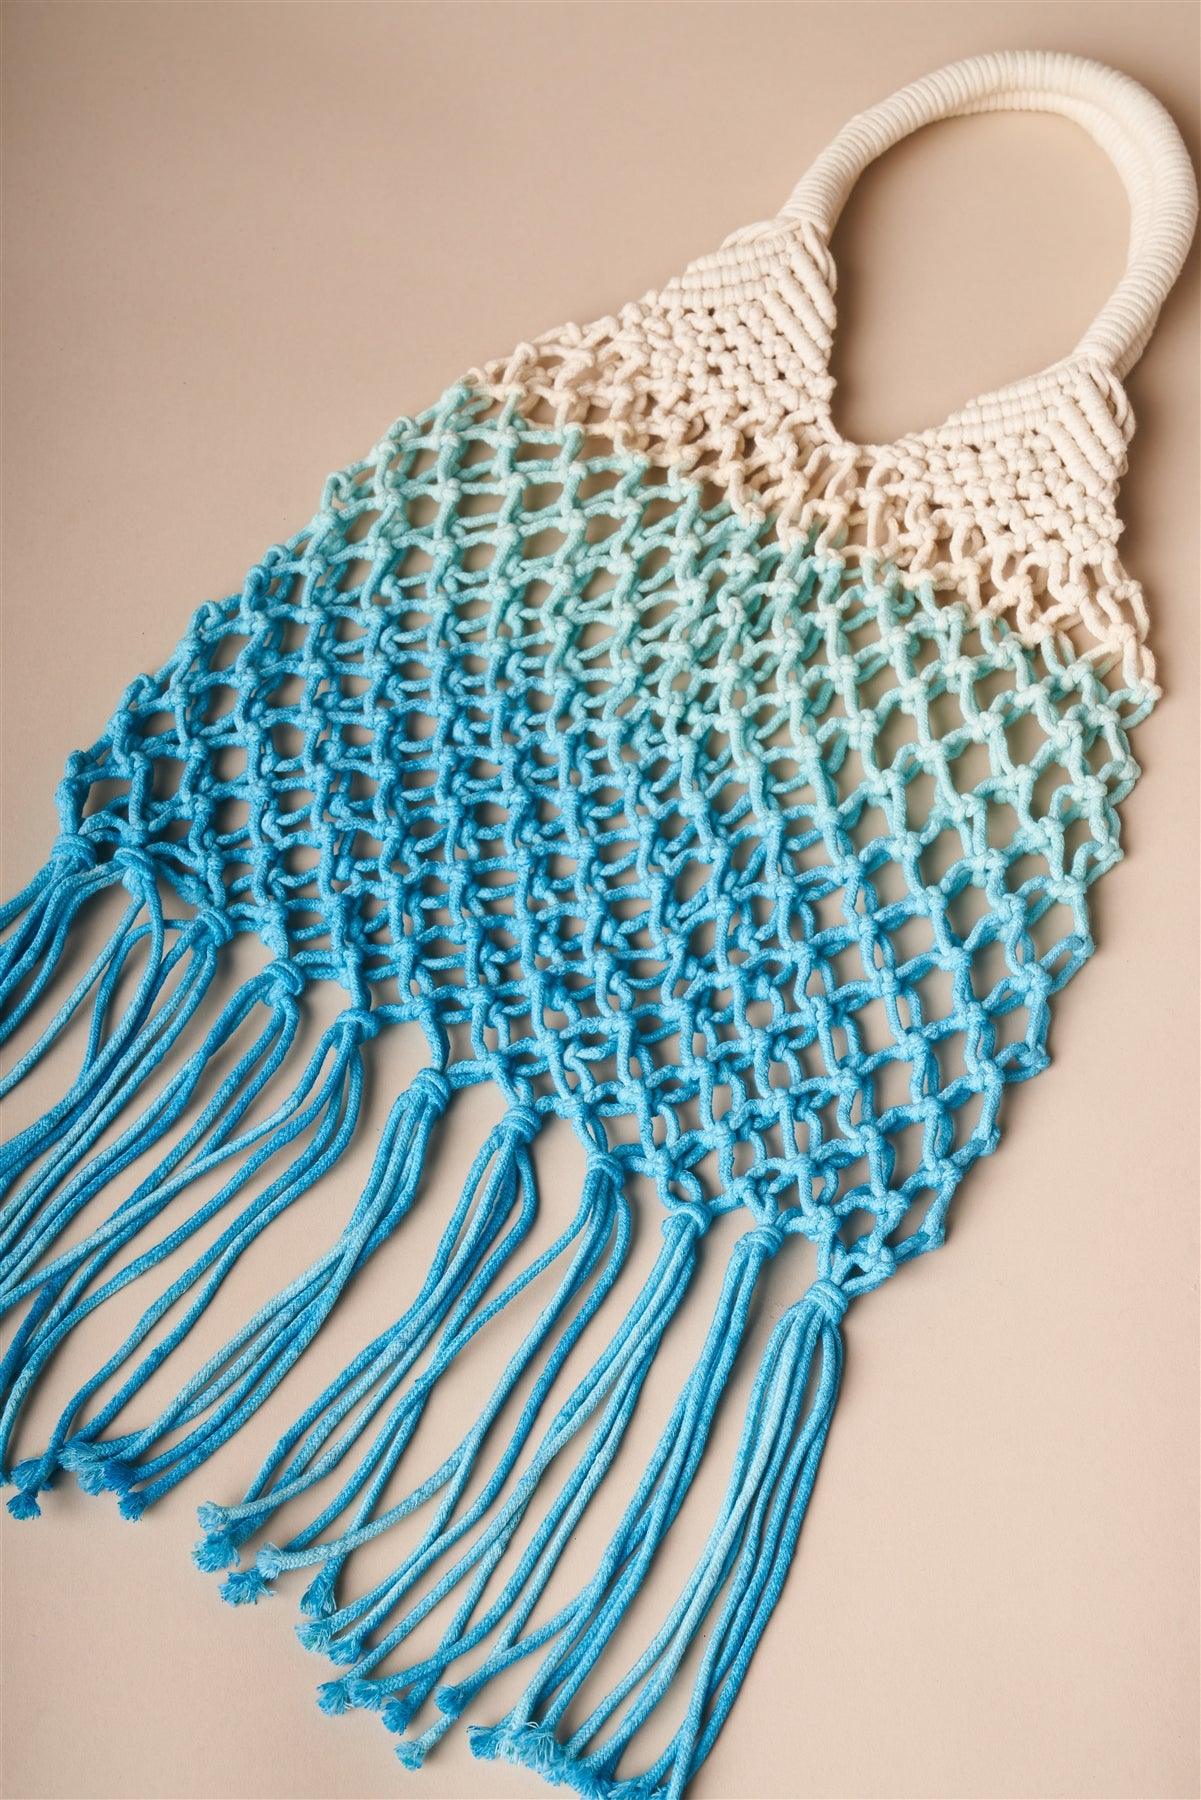 Turquoise Blue Cotton Net Fringe Fashion Bag /1 Bag